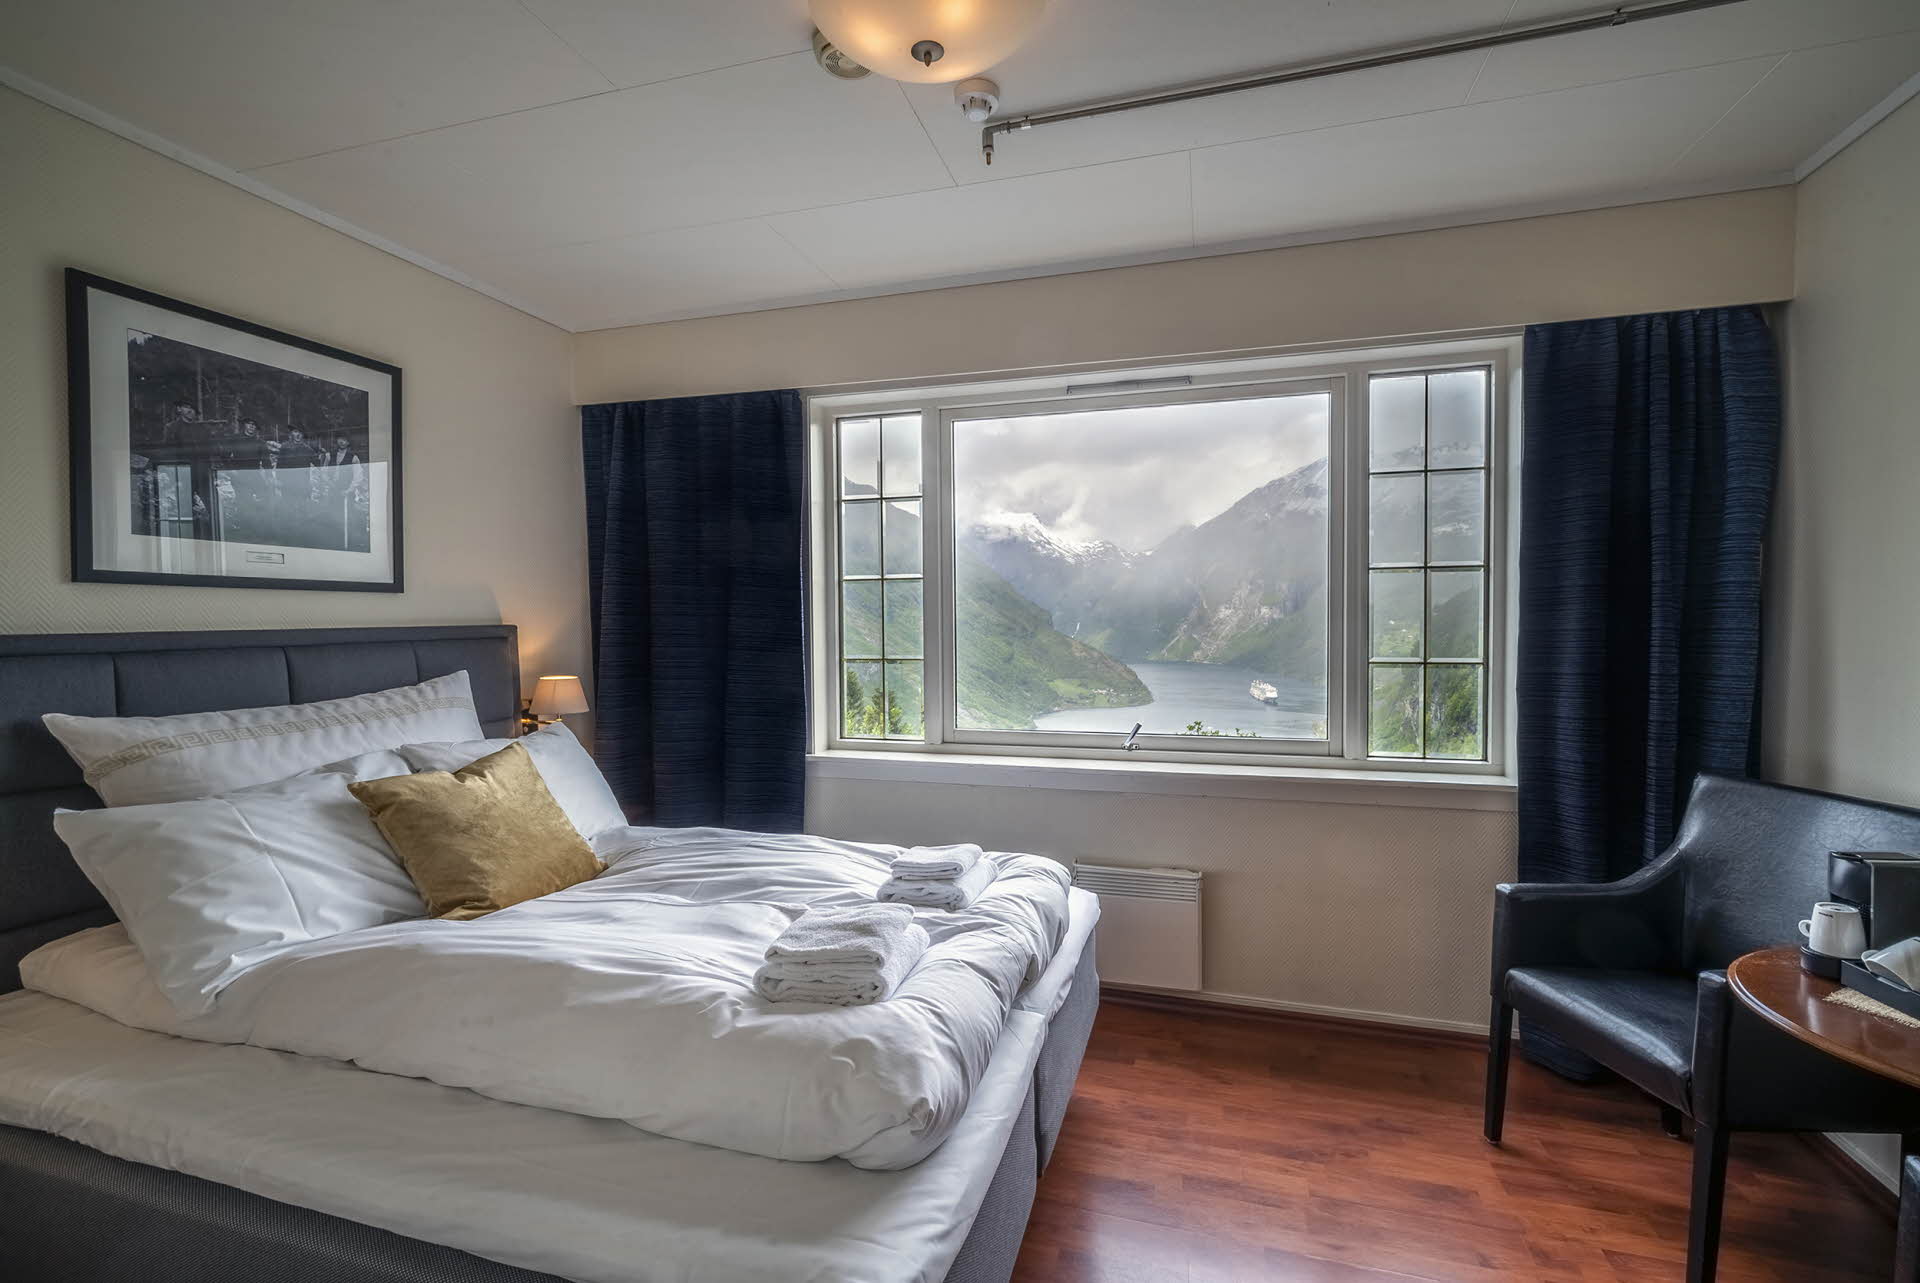 乌特斯滕酒店双人房内景。床、休闲椅、可以看到峡湾景色的窗边桌。 